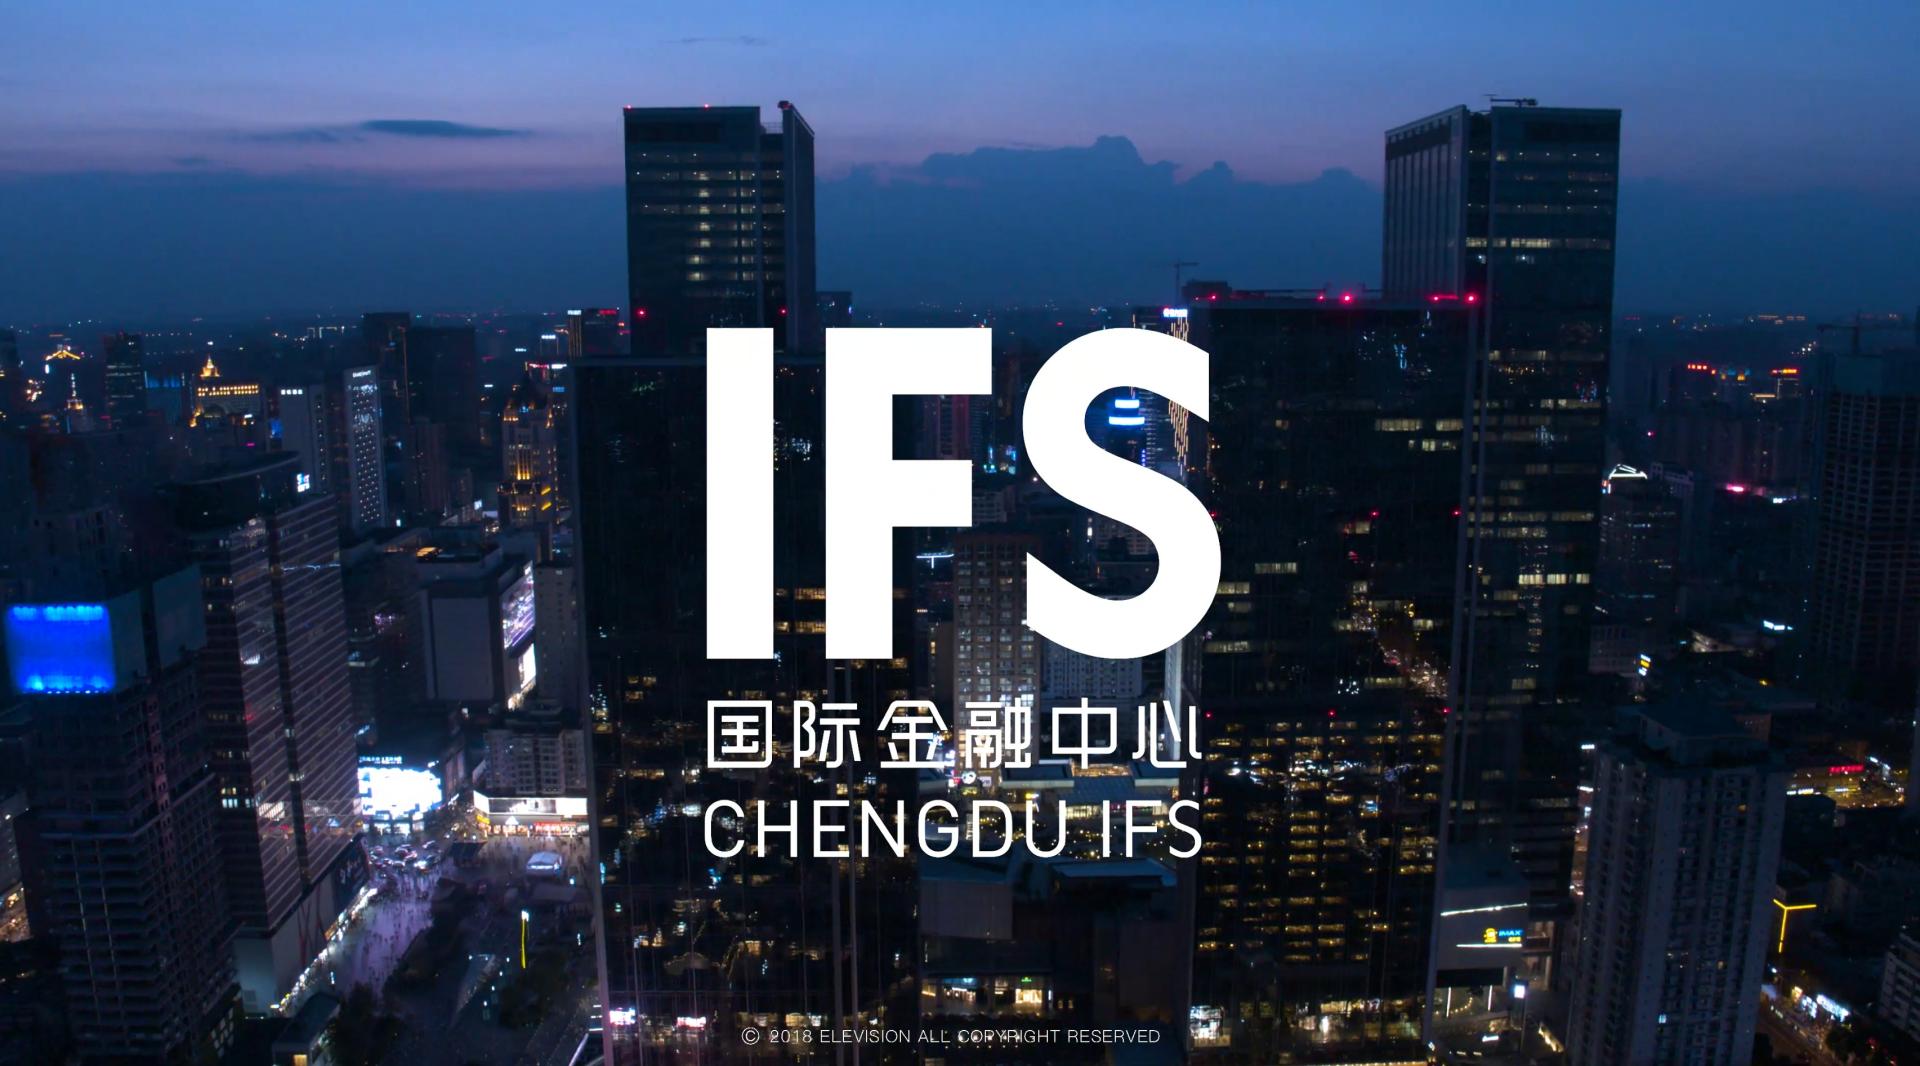 IFS国金中心 2018 宣传片—《MIX IFS》